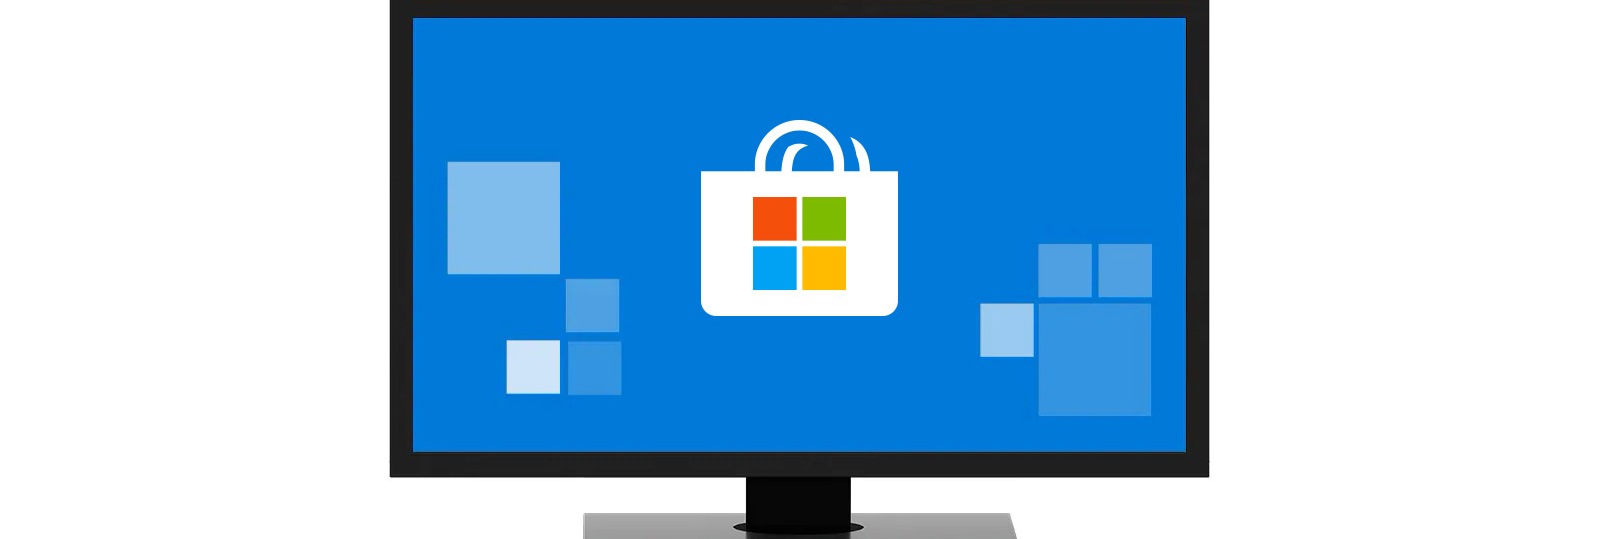 การเล นเกมบนพ ซ Windows 10 Microsoft - ร บ roblox microsoft store th th